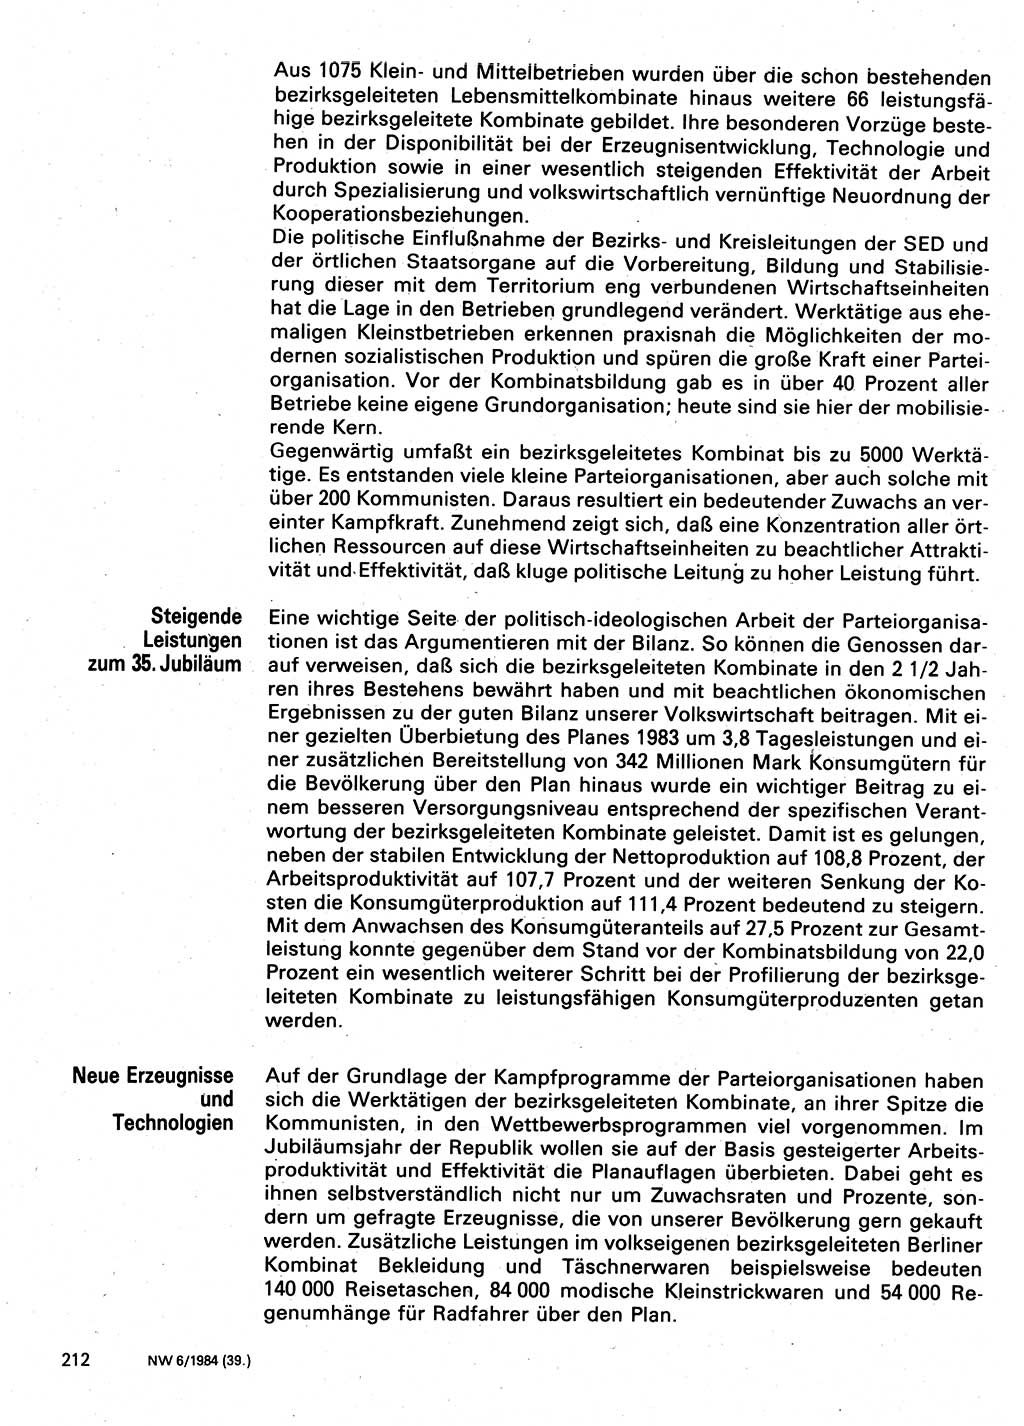 Neuer Weg (NW), Organ des Zentralkomitees (ZK) der SED (Sozialistische Einheitspartei Deutschlands) für Fragen des Parteilebens, 39. Jahrgang [Deutsche Demokratische Republik (DDR)] 1984, Seite 212 (NW ZK SED DDR 1984, S. 212)